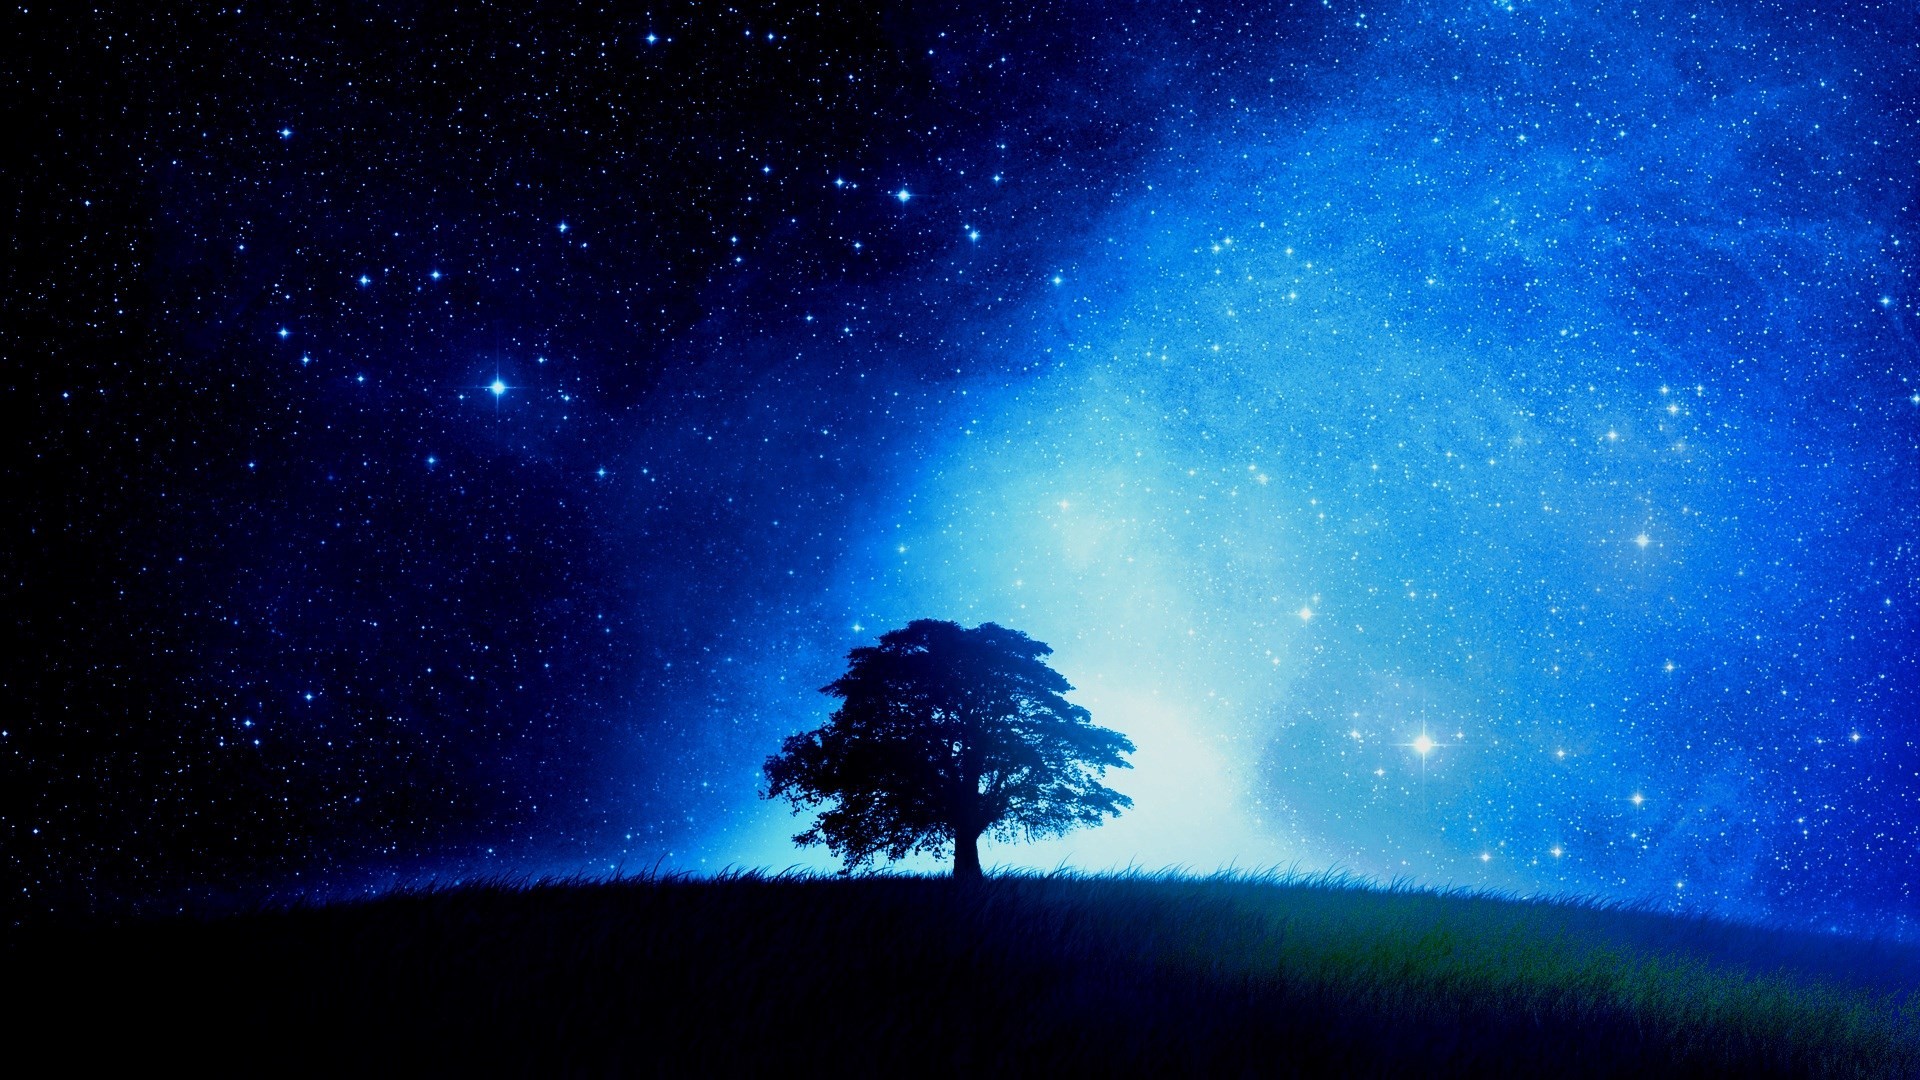 Bầu trời đêm đầy sao: Trong đêm tĩnh lặng, hãy thưởng thức hình ảnh tuyệt đẹp về bầu trời đầy sao. Tới vùng đất xa xôi và chiêm ngưỡng ngàn vì sao lấp lánh bên cạnh những cảm nhận tuyệt vời của cuộc sống.